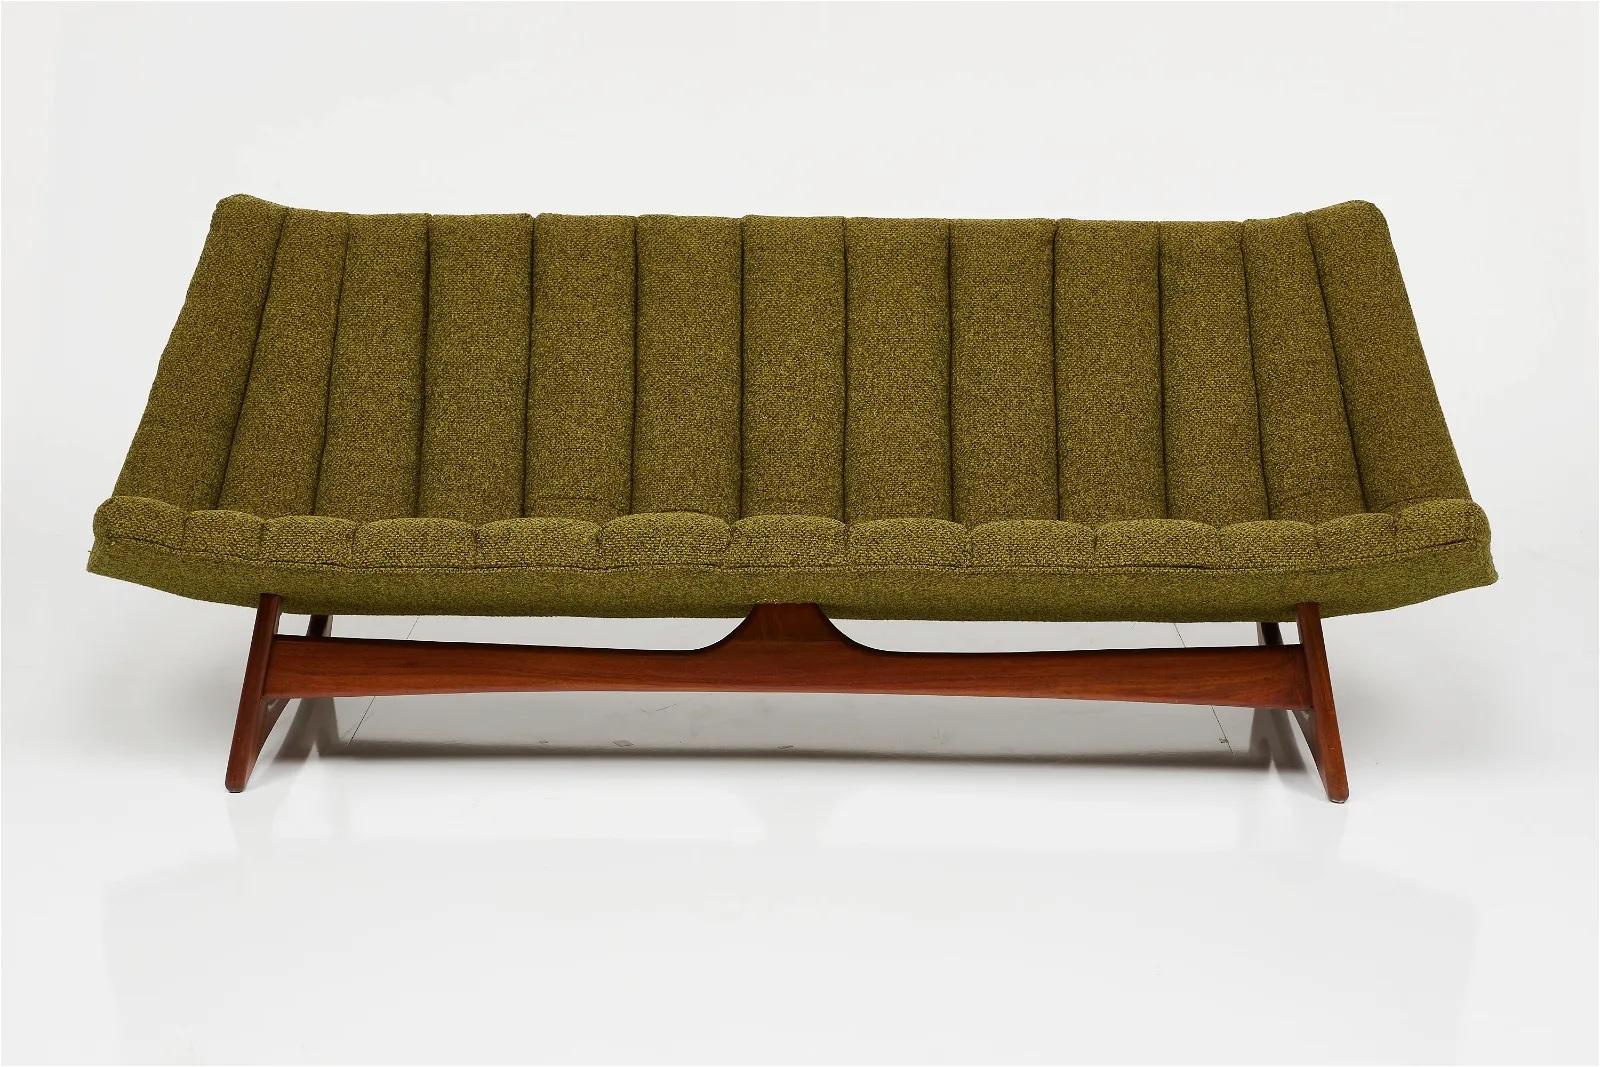 Ce canapé sans accoudoir très soigné du designer de meubles américain Adrian Pearsall rendra certainement votre espace encore plus unique ! 

Ce canapé sans accoudoir a été construit par Craft Associates en Pennsylvanie et est composé de tissu et de